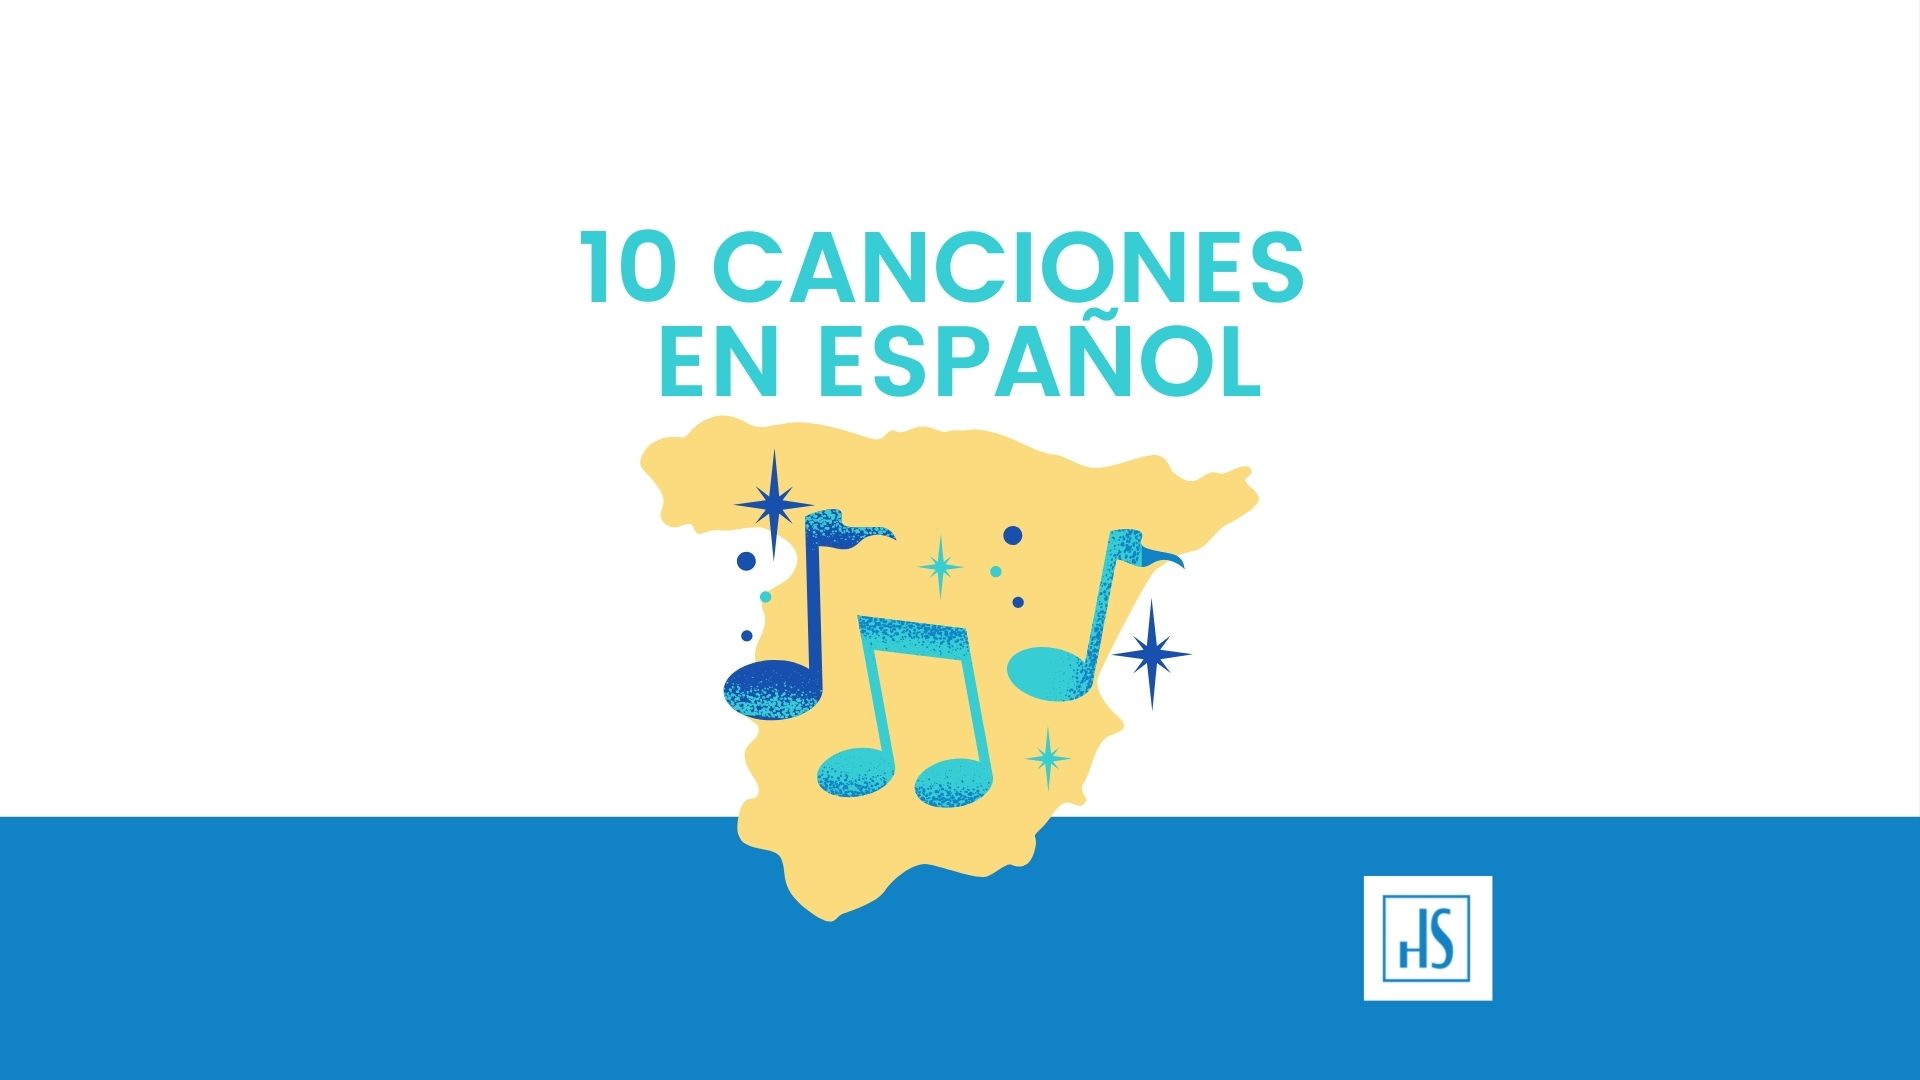 Las 50 mejores canciones de pop en español del 2000 al 2023, clasificadas